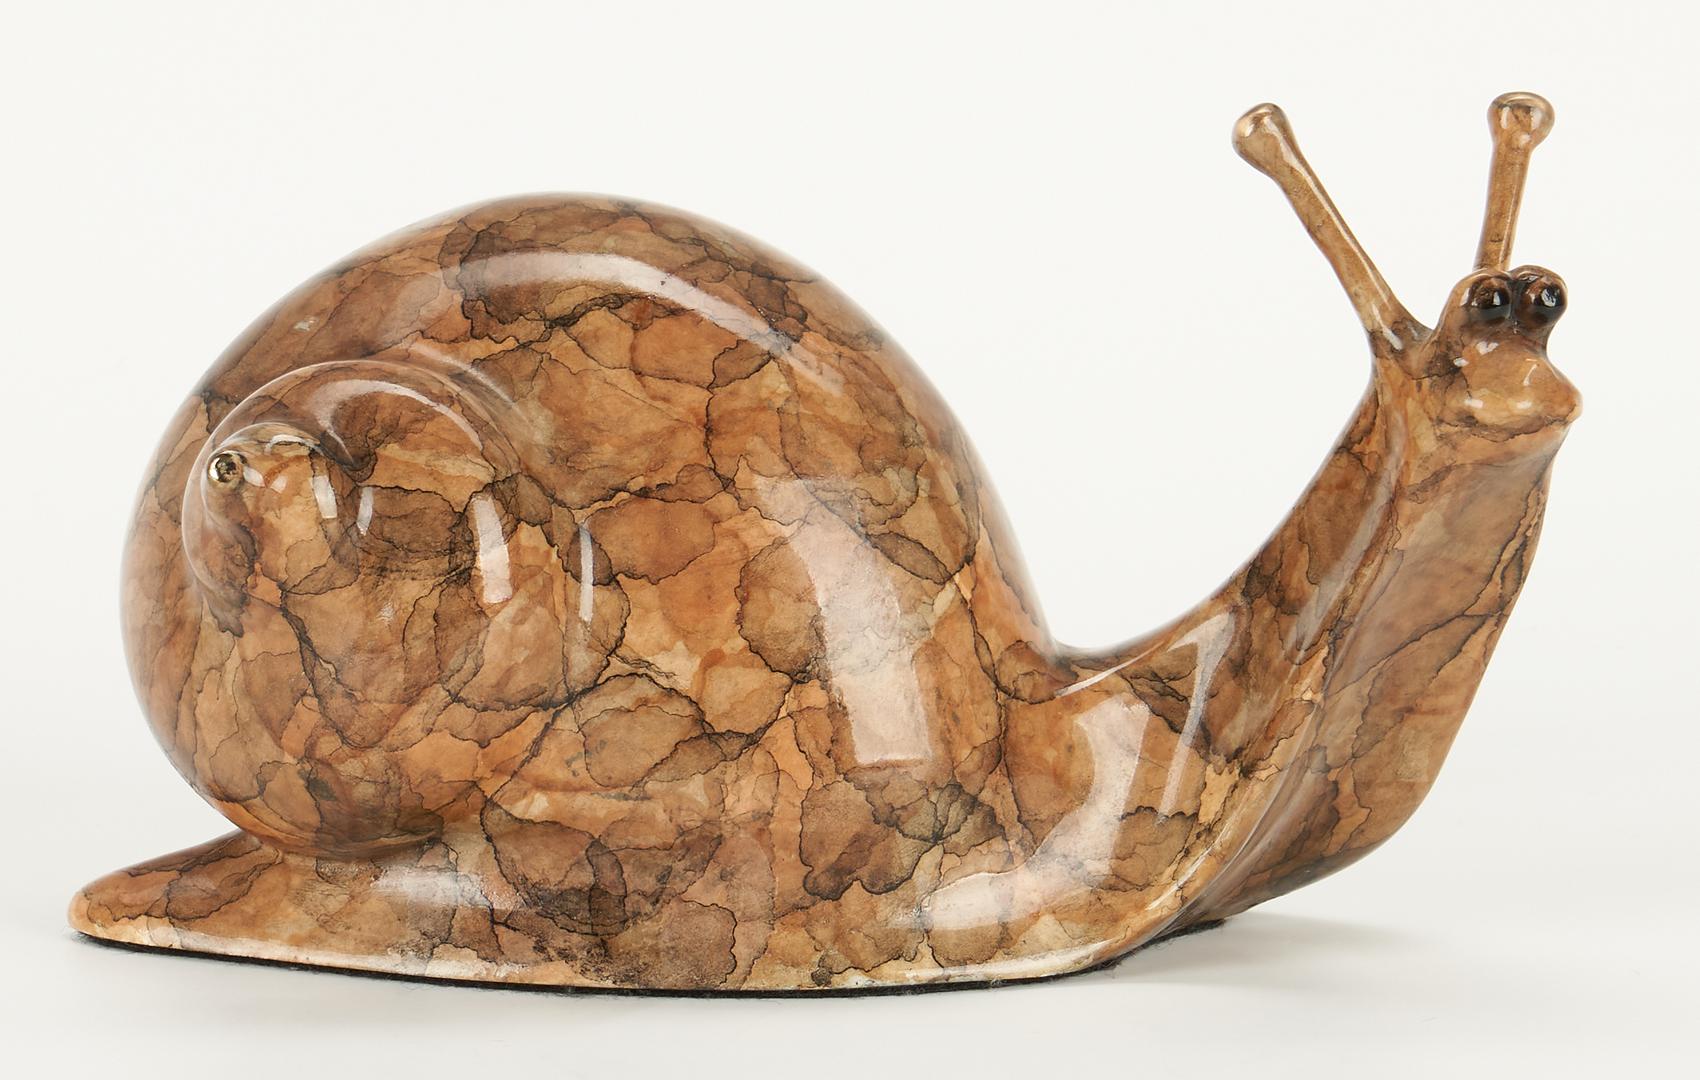 2 Robert Deurloo Bronze Sculptures, Bison and Snail - Image 8 of 16